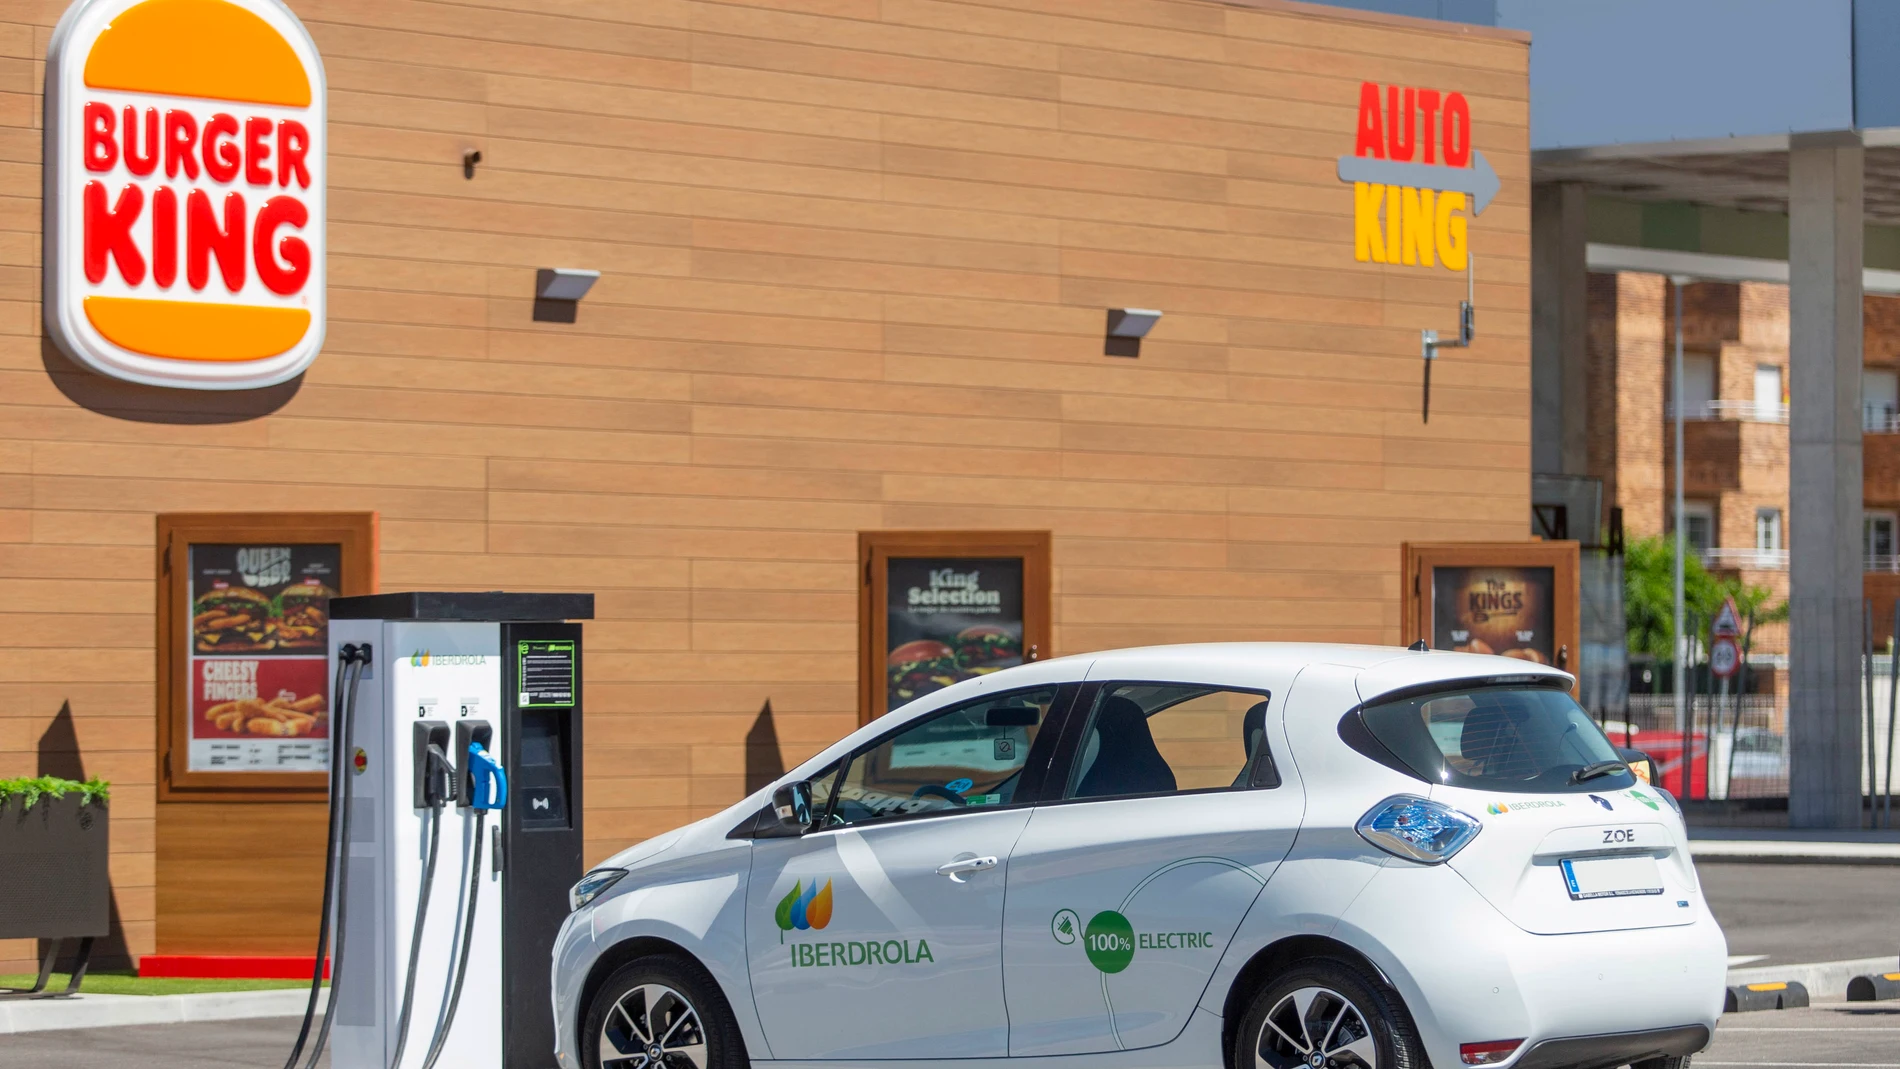 Los usuarios cargarán la batería de sus automóviles con energía 100% verde y podrán localizar, reservar y pagar desde el móvil a través de la aplicación Recarga Pública Iberdrola